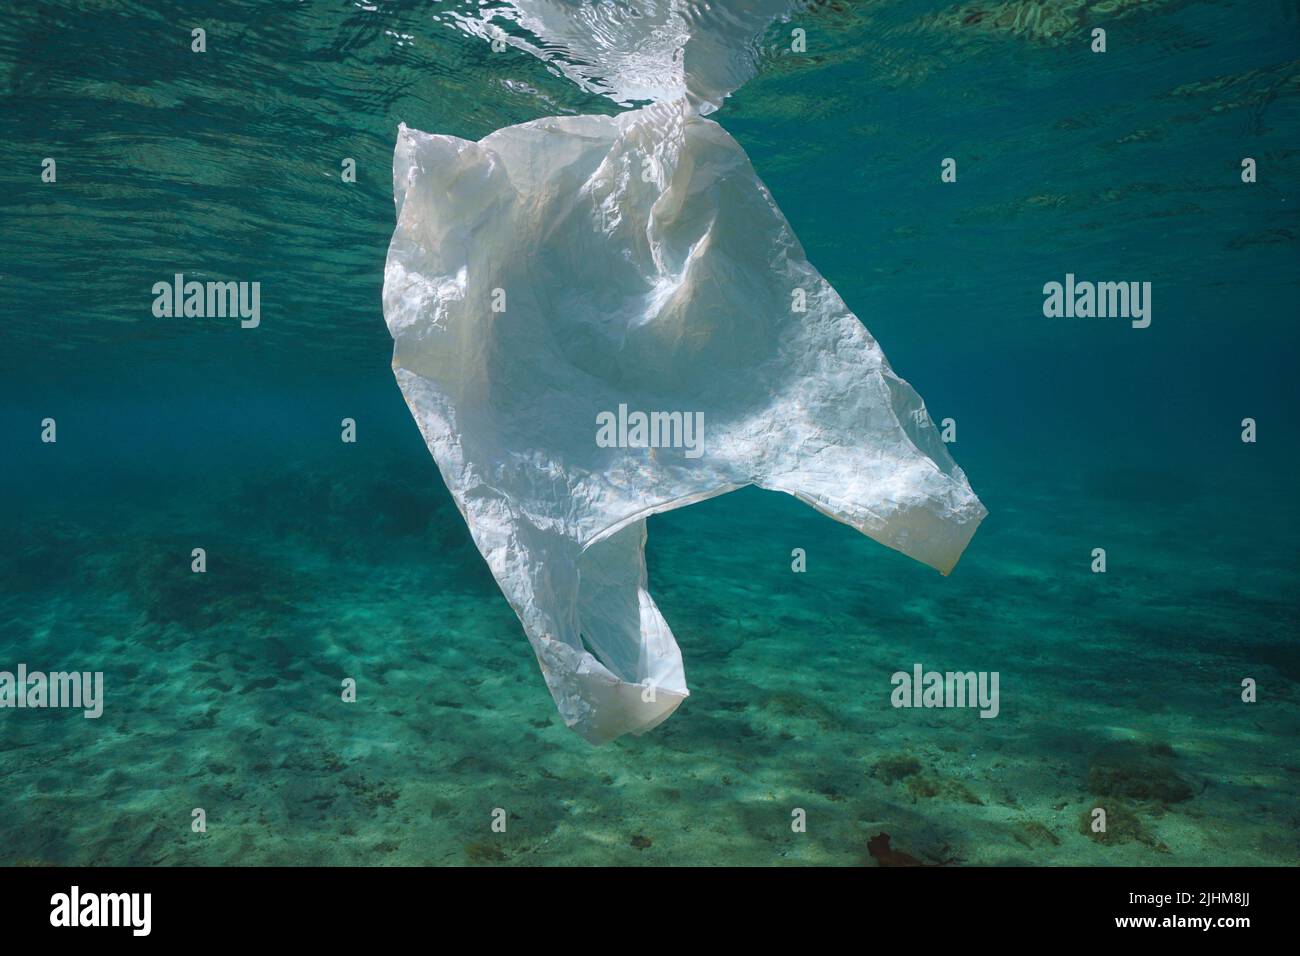 Un sac en plastique blanc sous l'eau, pollution des déchets plastiques dans les océans Banque D'Images